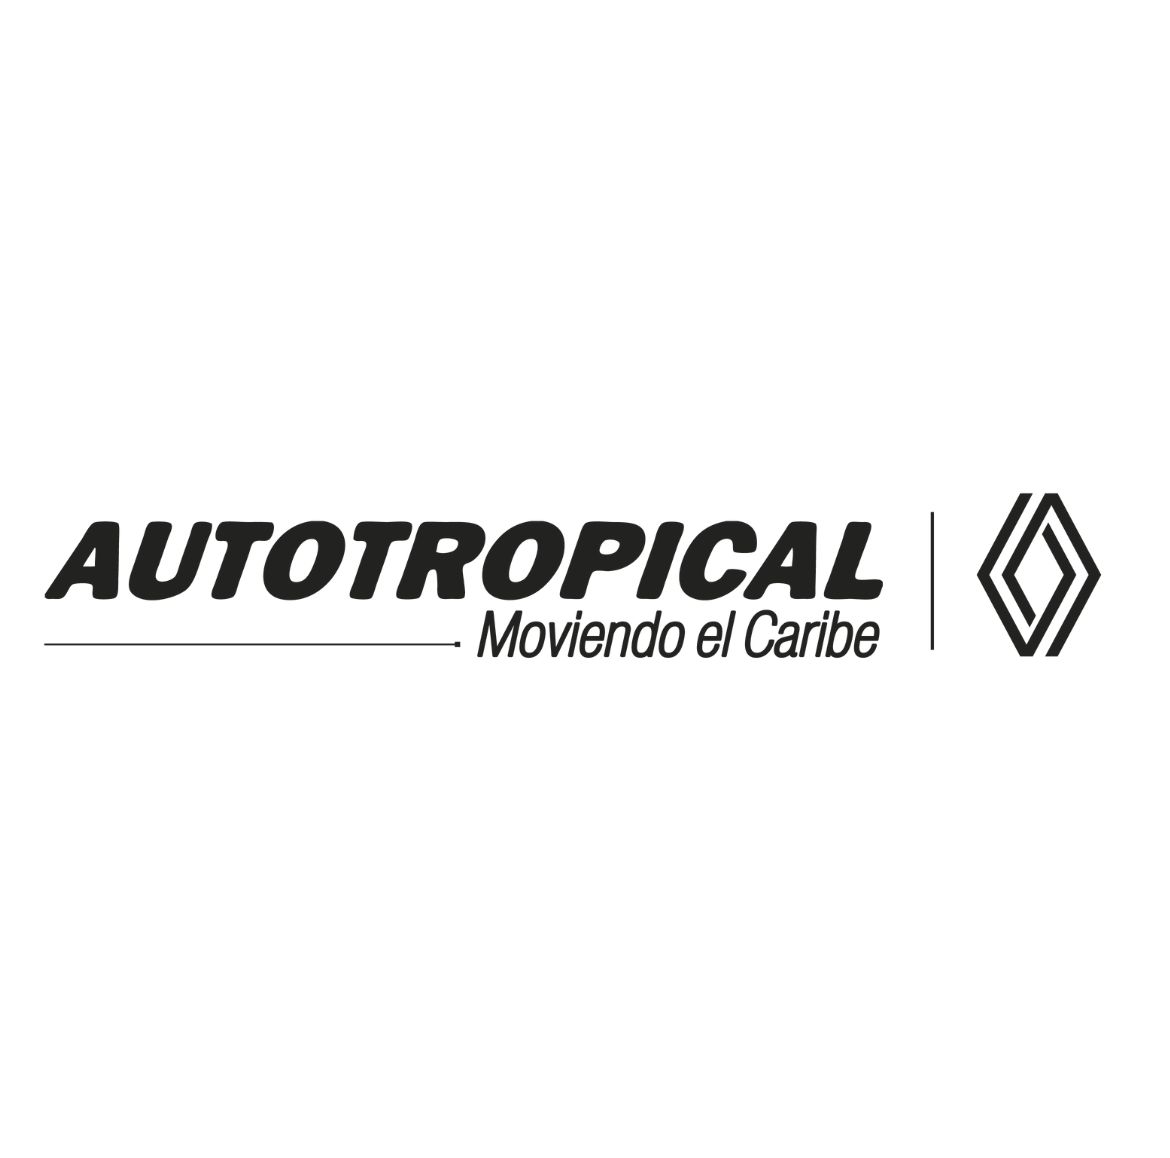 Concesionario Autotropical